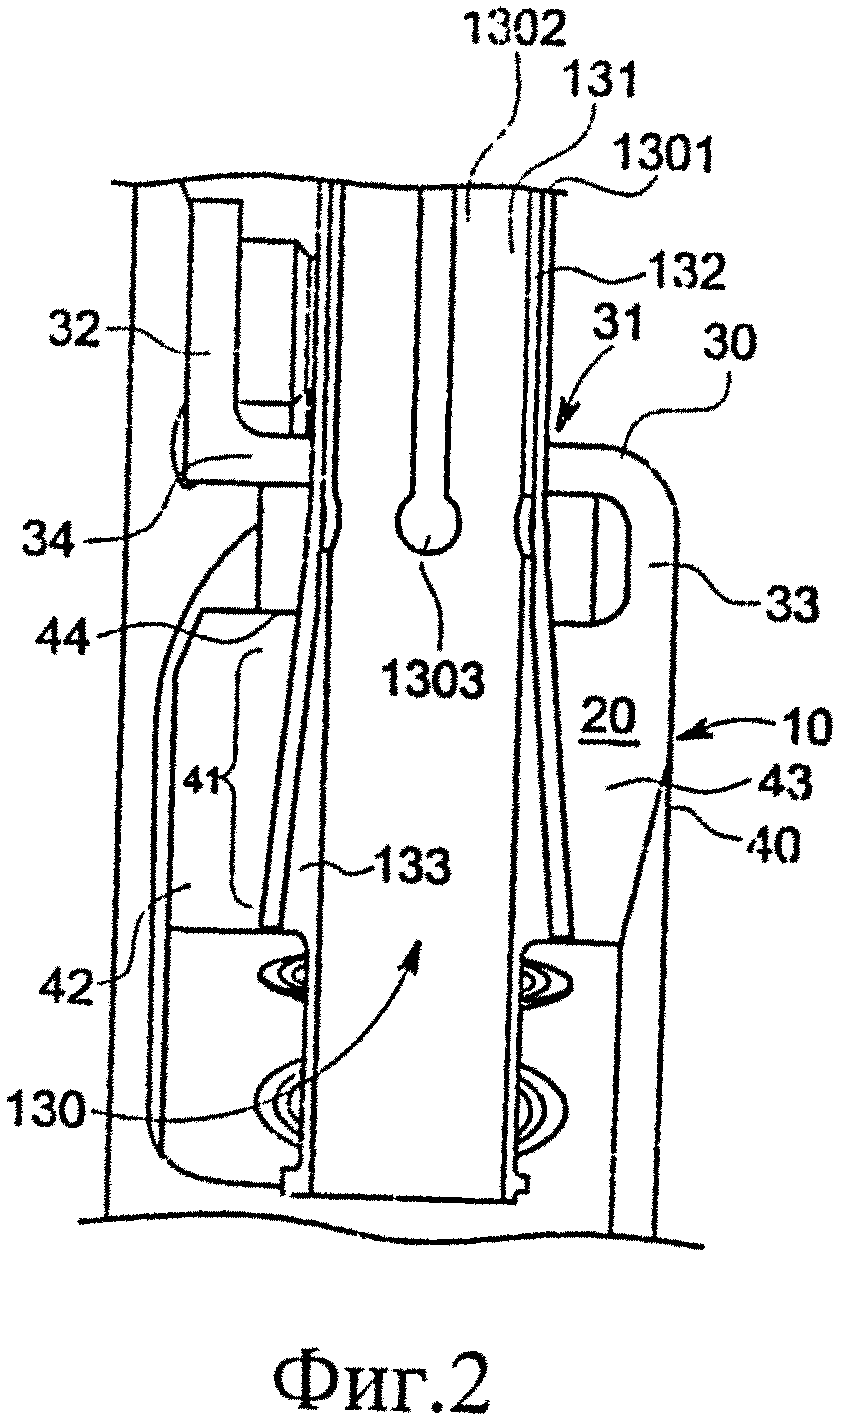 Удерживающий кронштейн для поддержания трубок рабочего колеса турбомашины и элемент турбомашины (варианты)